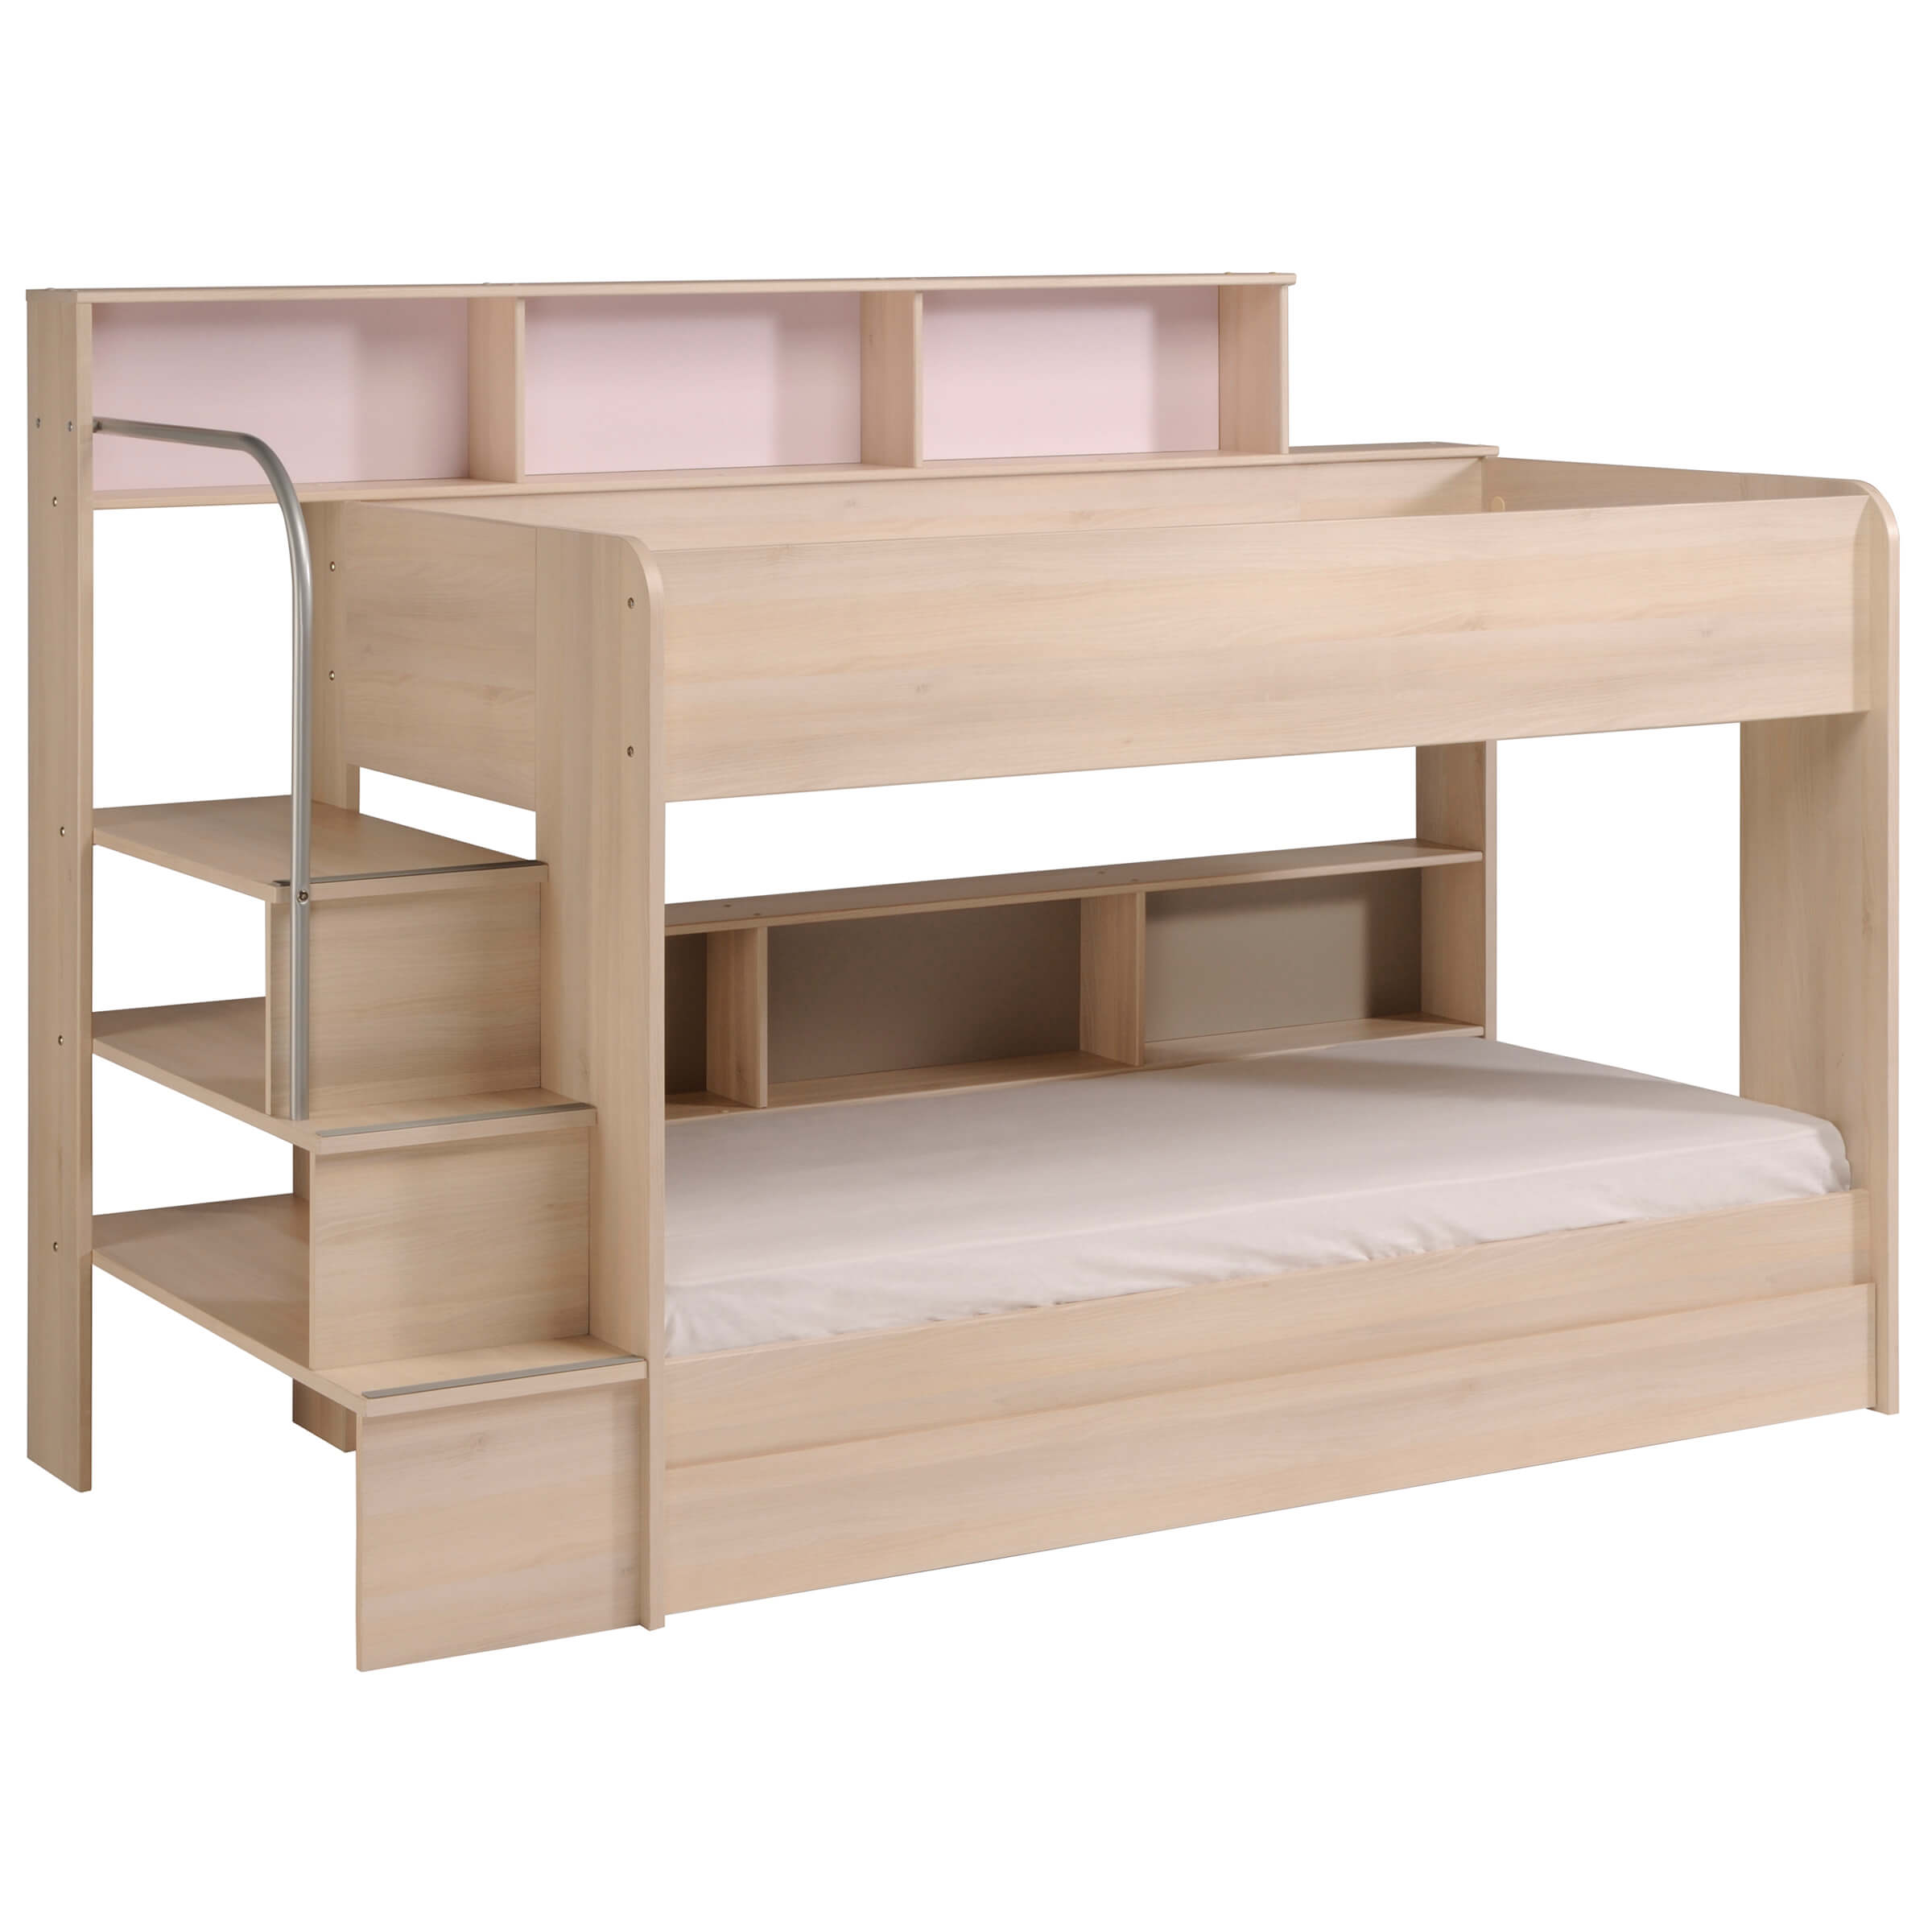 Bibop-3-Sleeper-Bunk-Bed-Light-Acacia-by-Parisot-Kids-Children-Furniture-Cutout.jpg